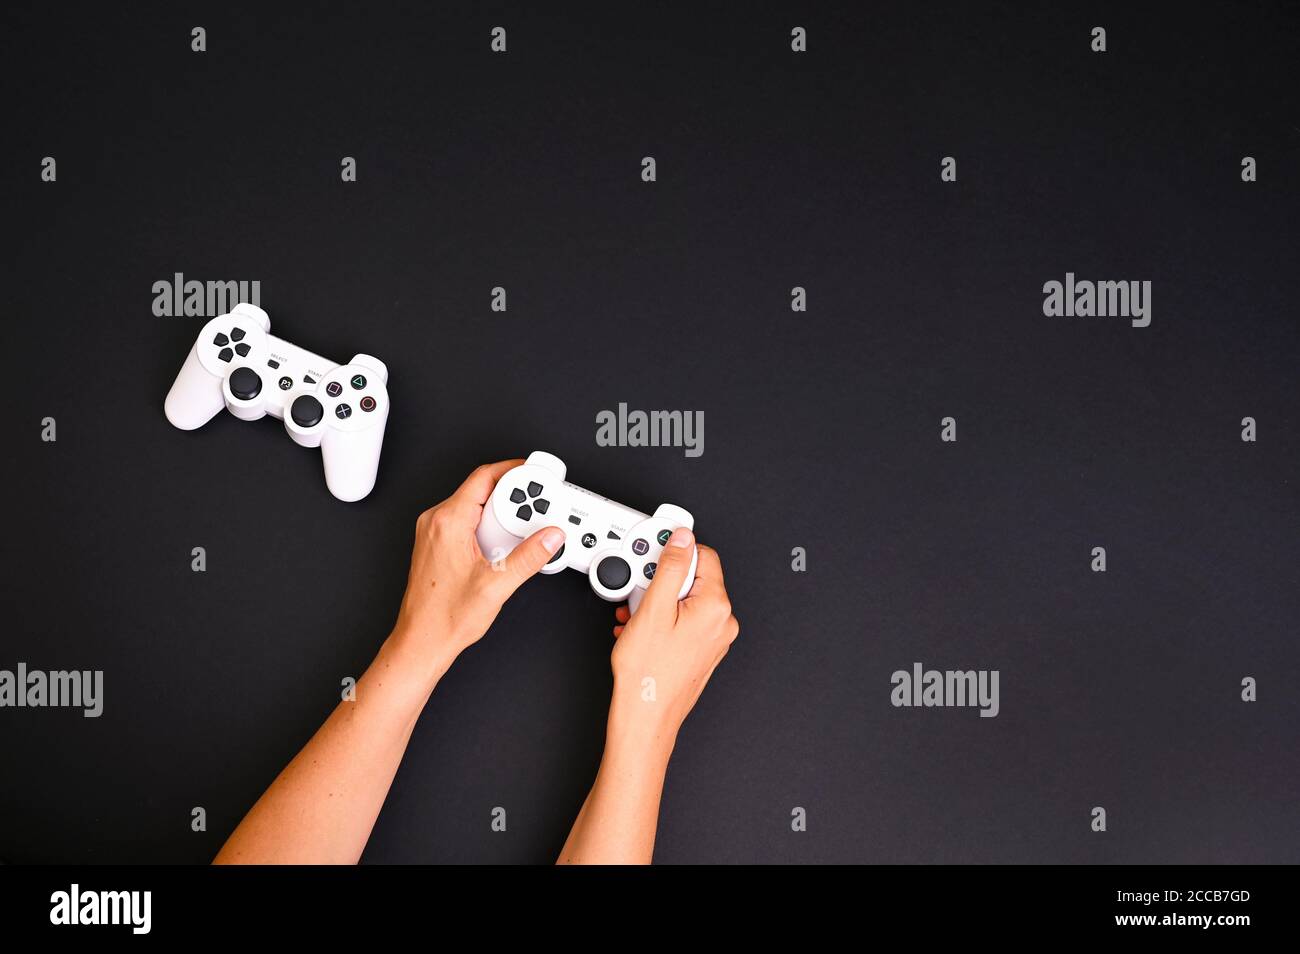 Concours de jeux informatiques. Concept de jeu. Joysticks blancs sur fond noir. Manette de jeu. Les mains dans le cadre jouent sur une console d'ordinateur. Haute qualité . Copier l'espace . Ci-dessus Banque D'Images